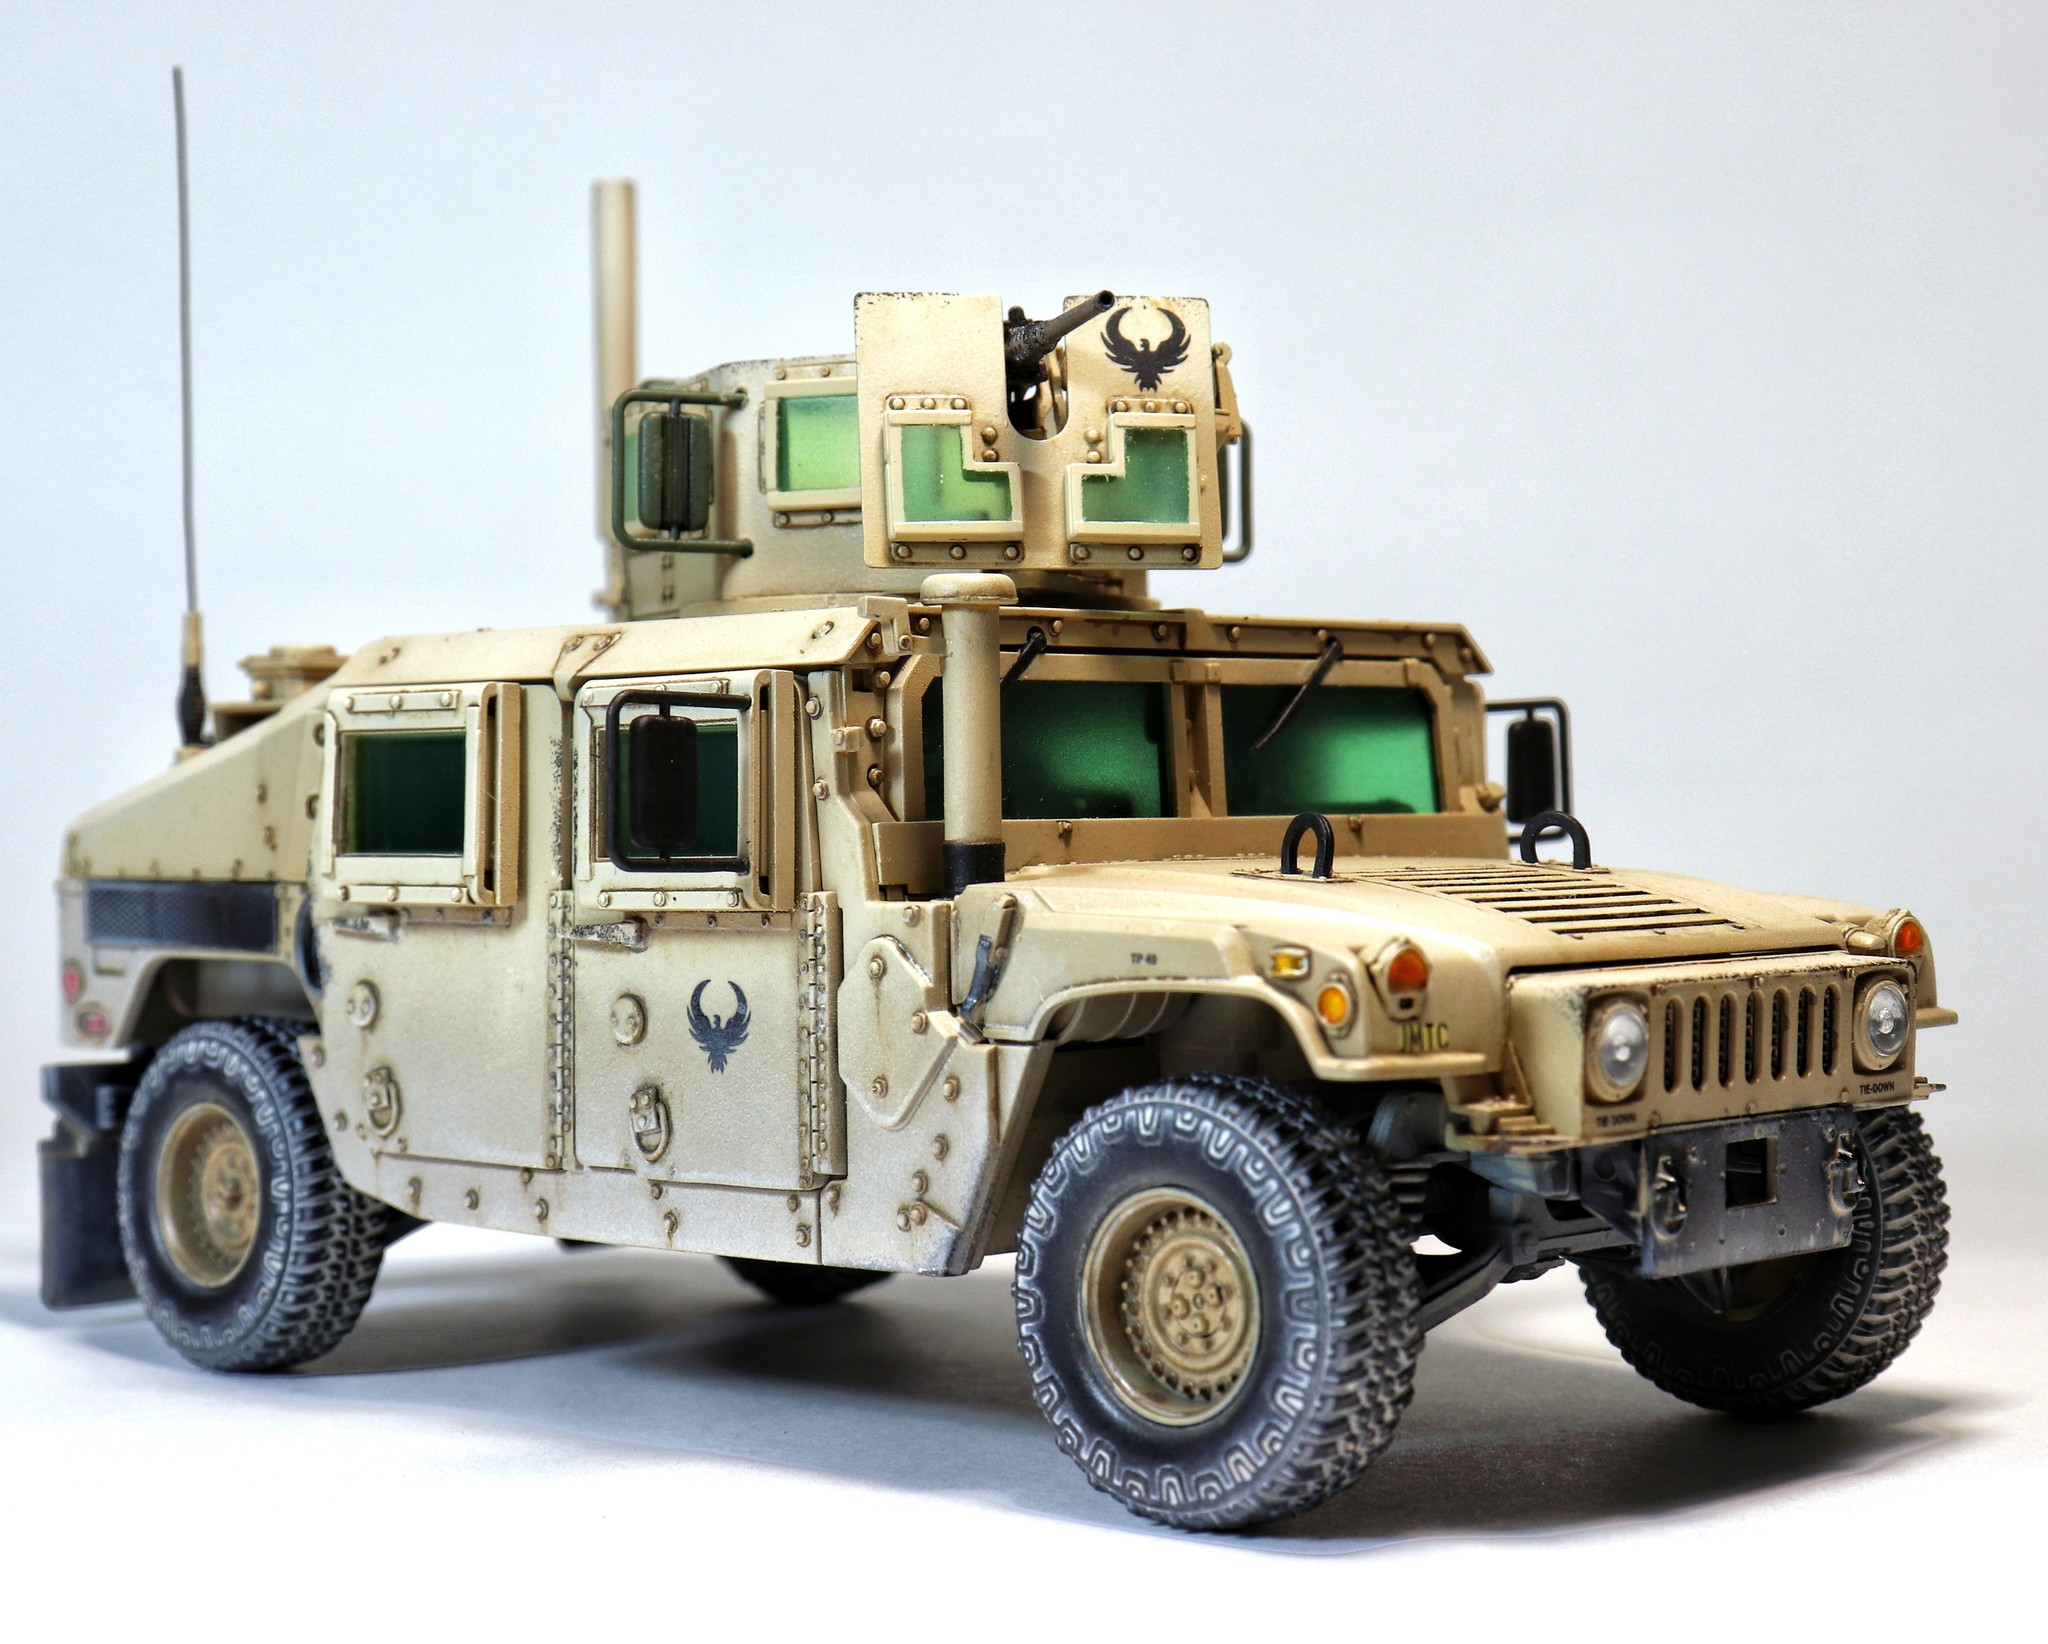 Experienced warrior - Scale model, Models, Humvee, SUV, Longpost